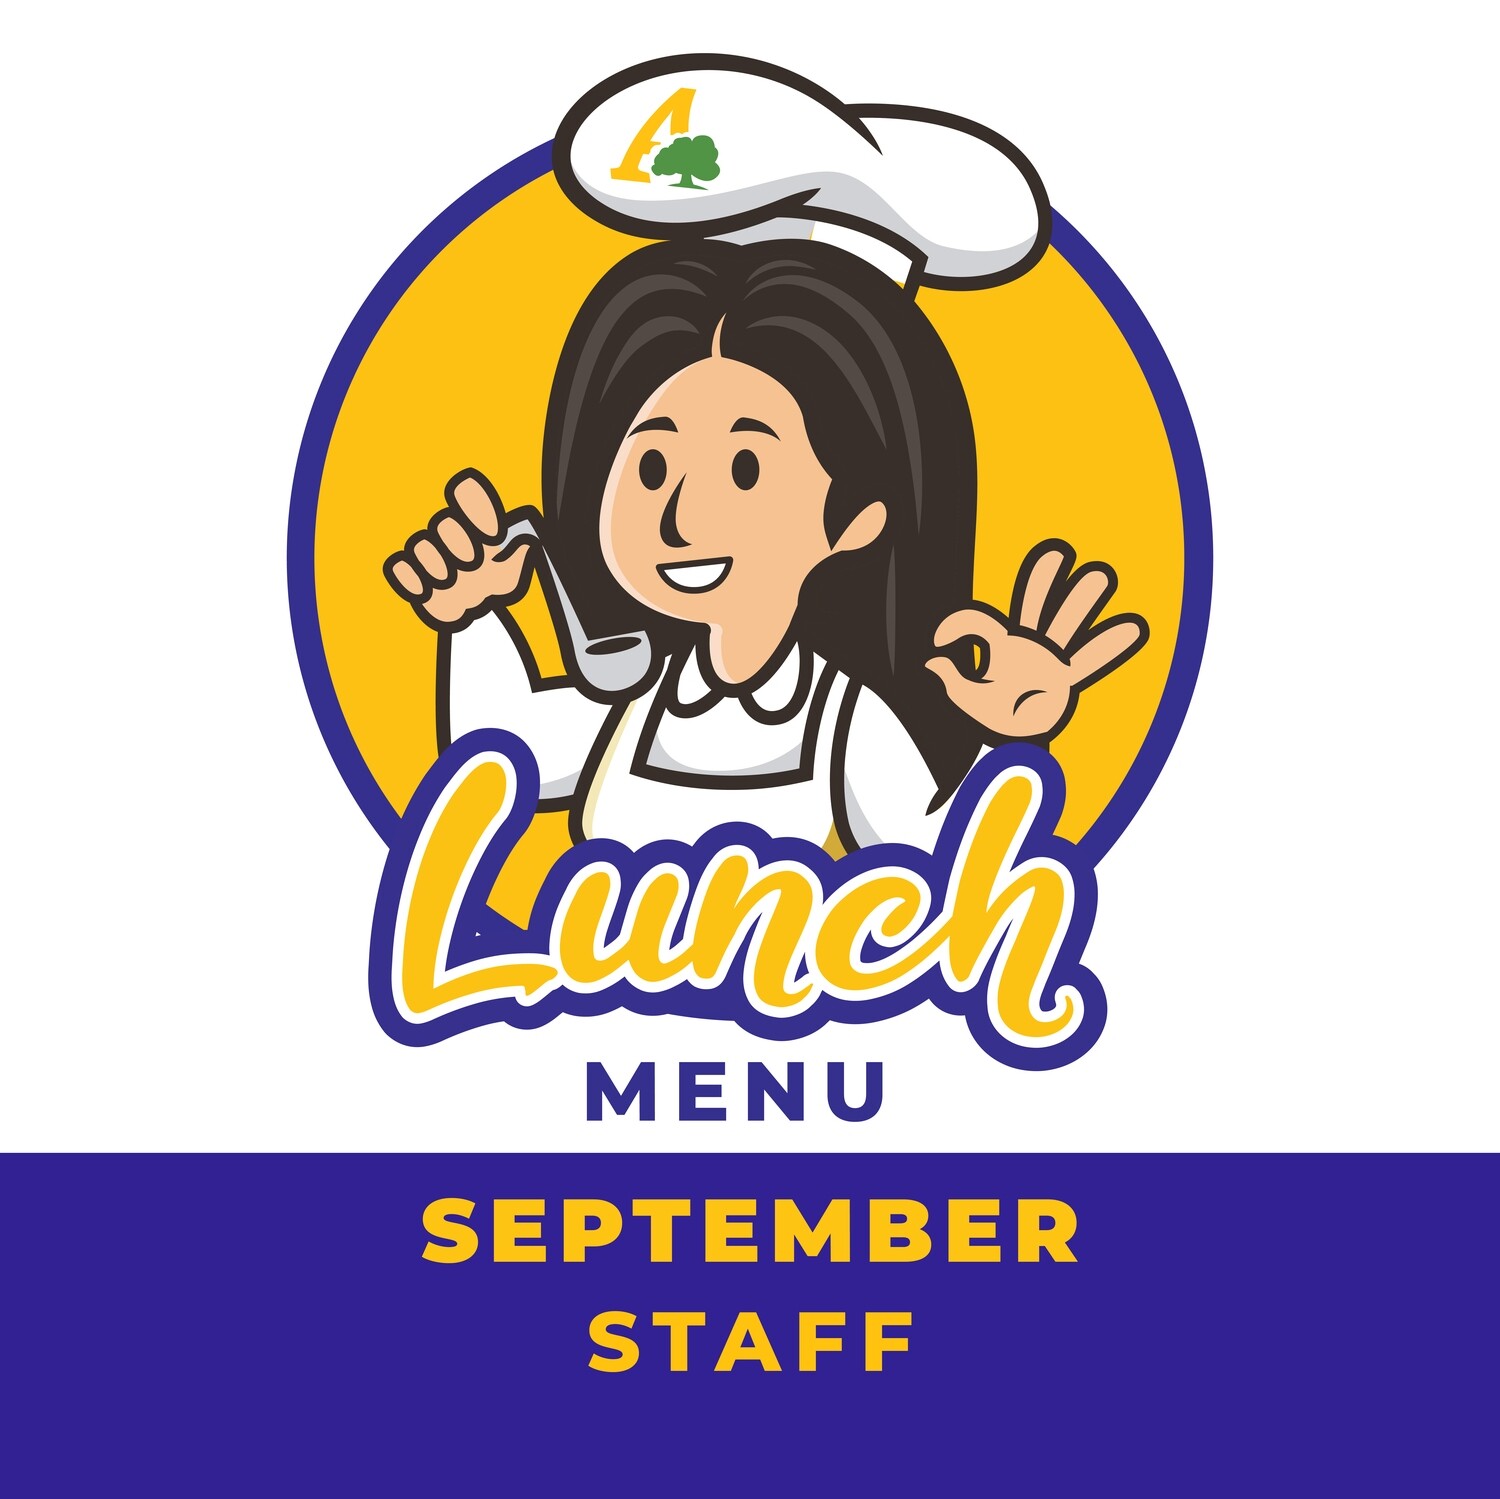 September Staff Lunch Menu